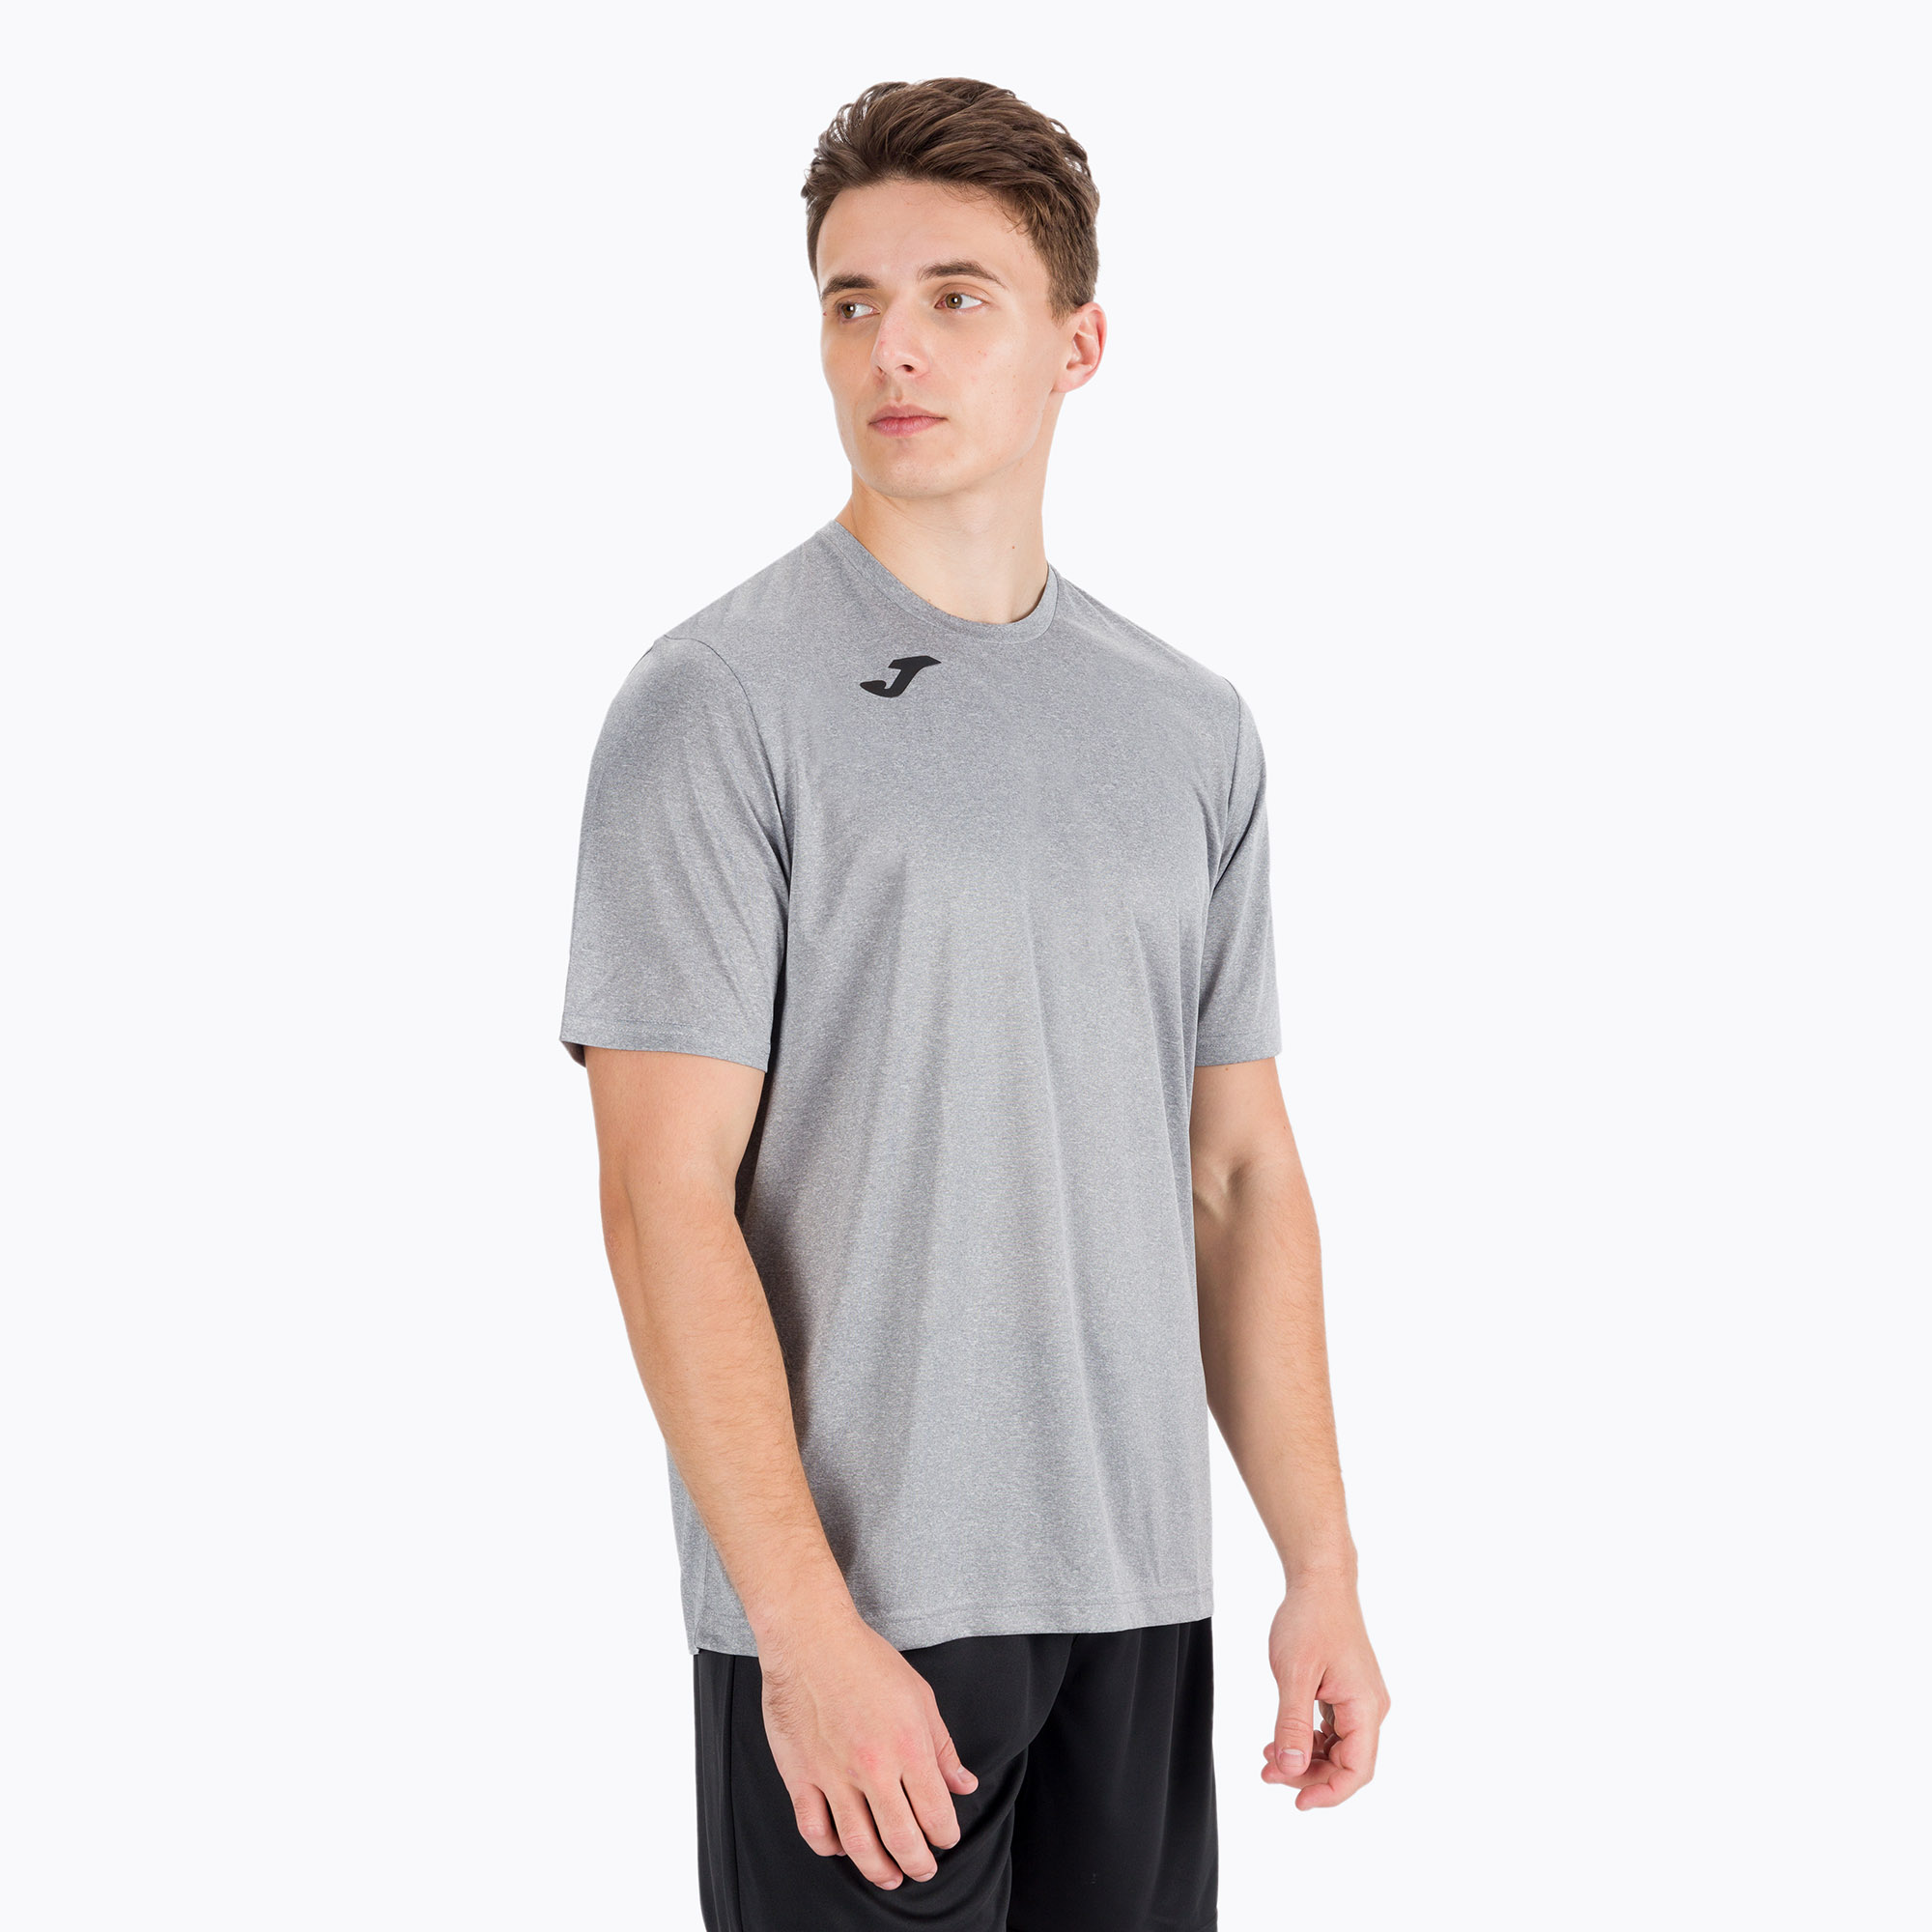 Futbalové tričko Joma Combi SS šedé 152